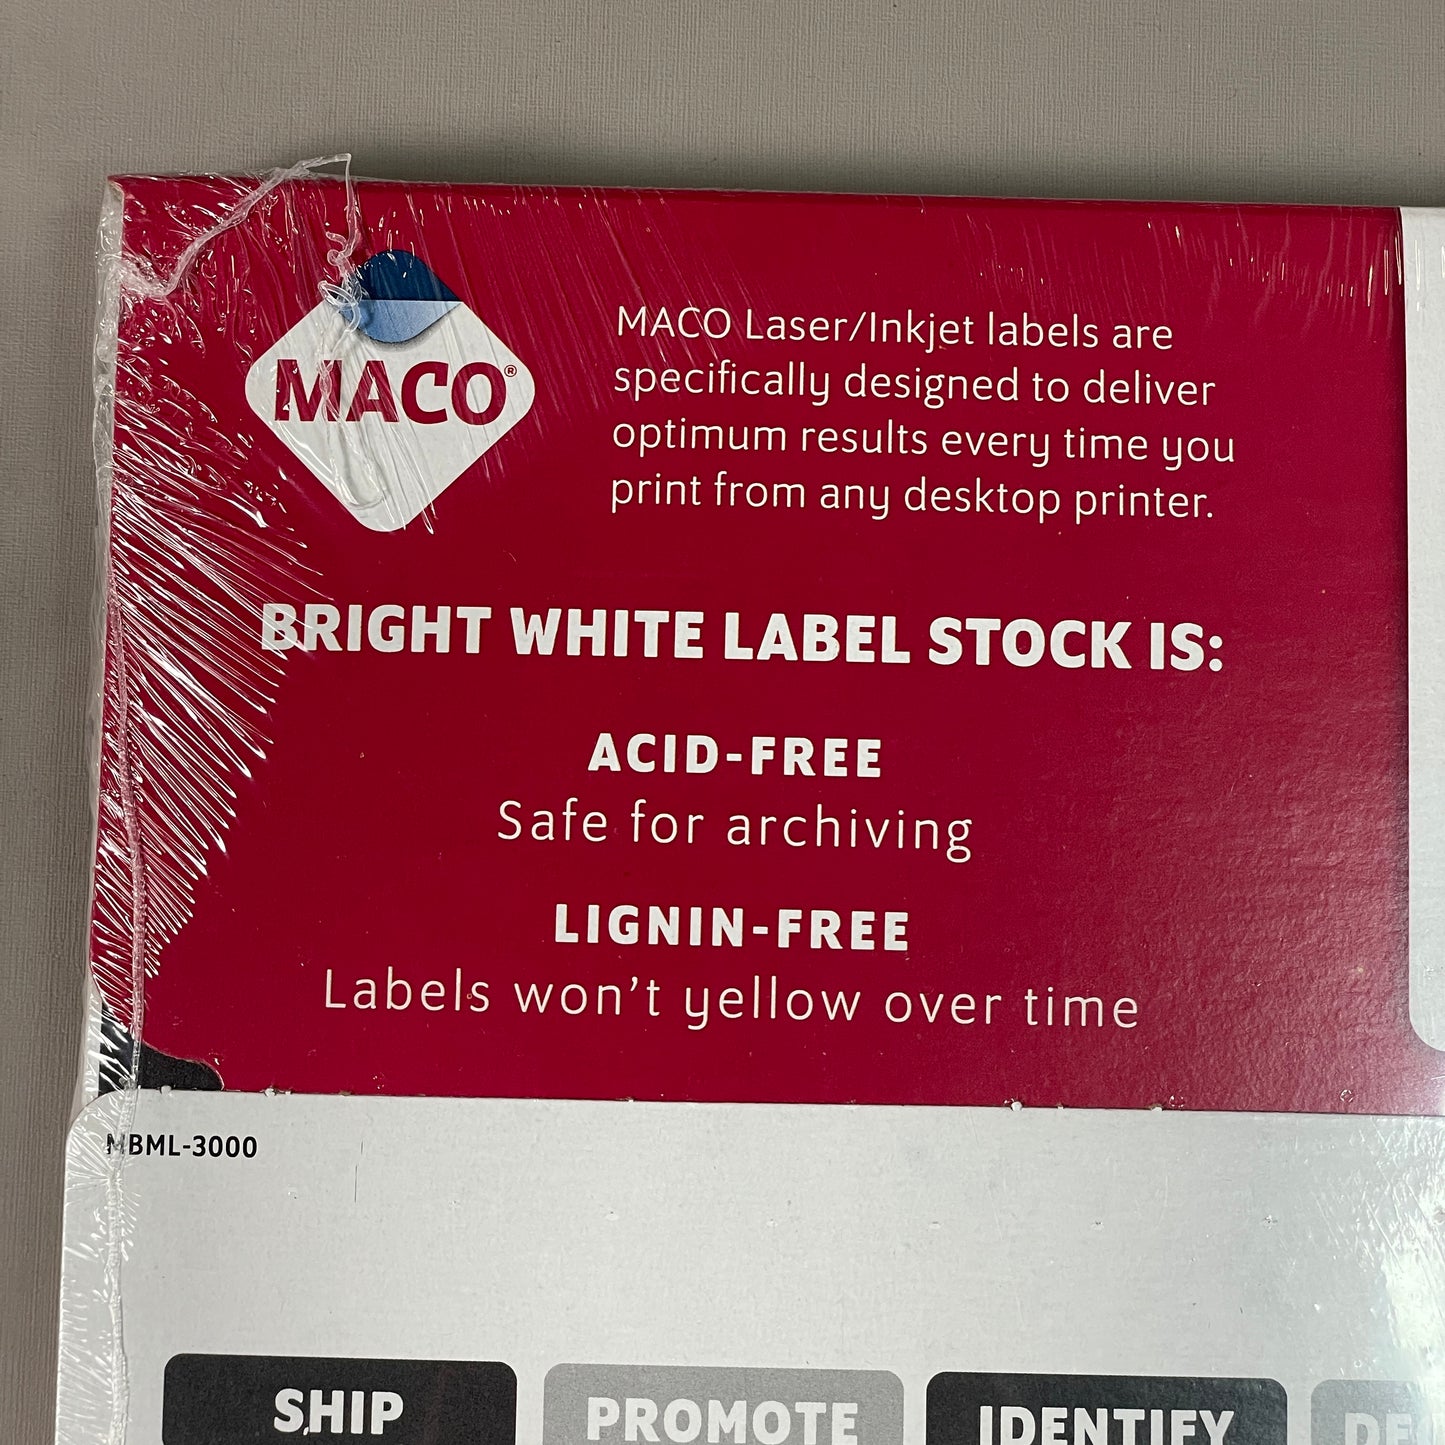 MACO Laser / Ink Jet White Address Labels, 1” x 2-5/8” 3000 Labels (100 Sheets) ML-3000